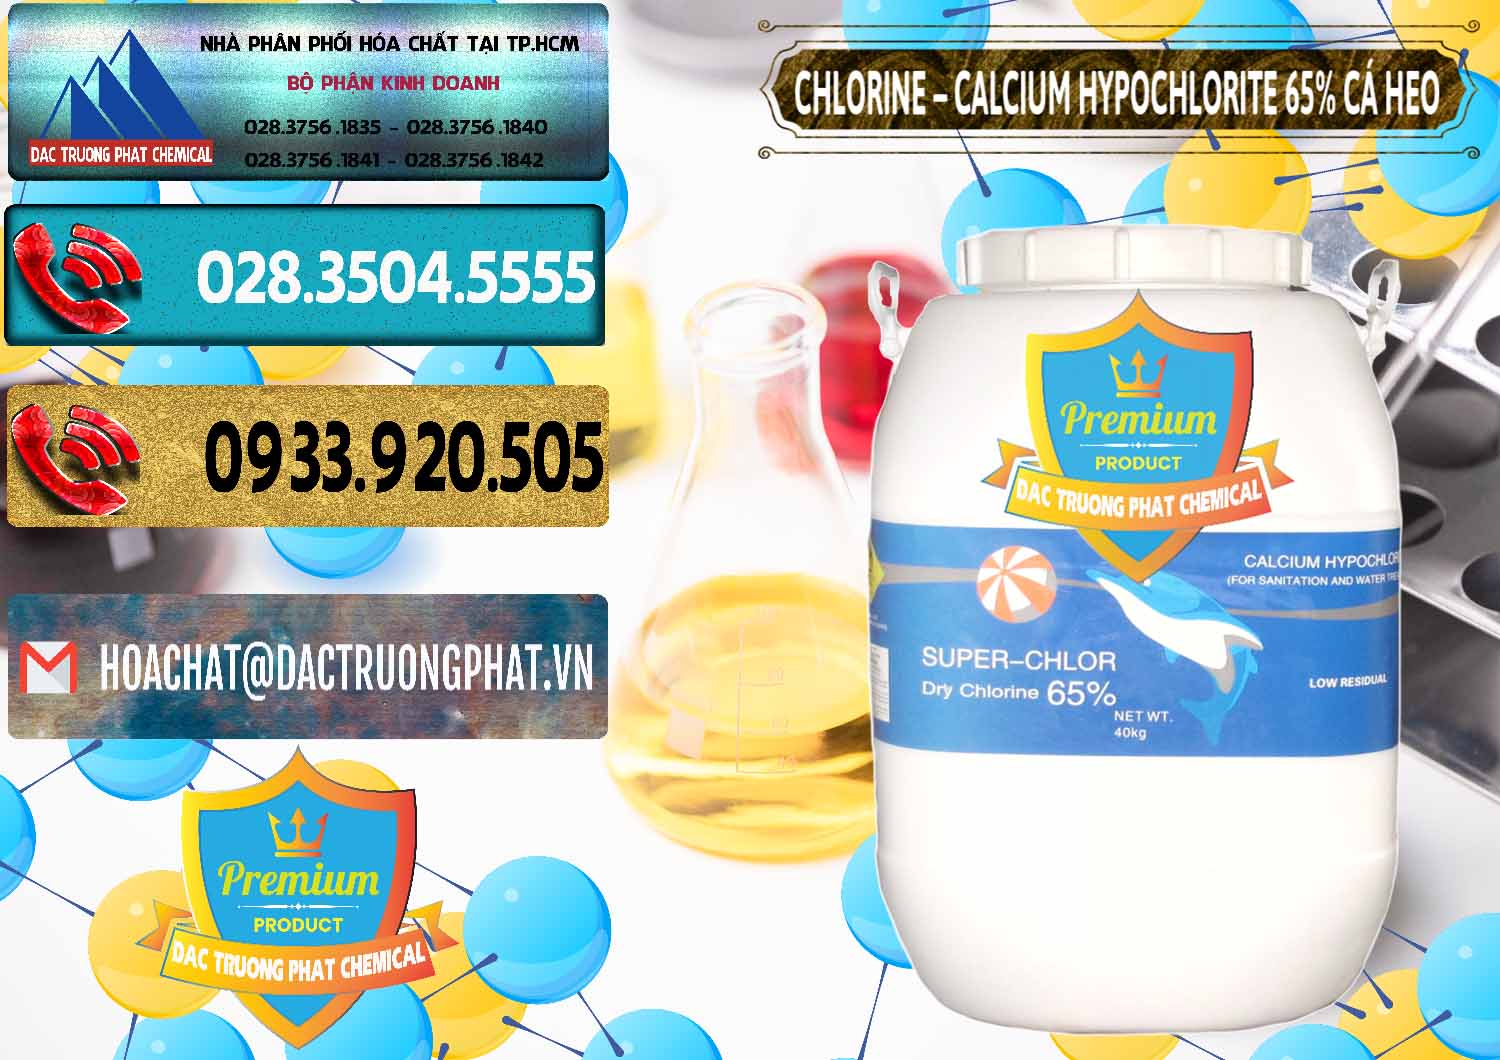 Đơn vị nhập khẩu ( bán ) Clorin - Chlorine Cá Heo 65% Trung Quốc China - 0053 - Cty nhập khẩu - cung cấp hóa chất tại TP.HCM - hoachatdetnhuom.com